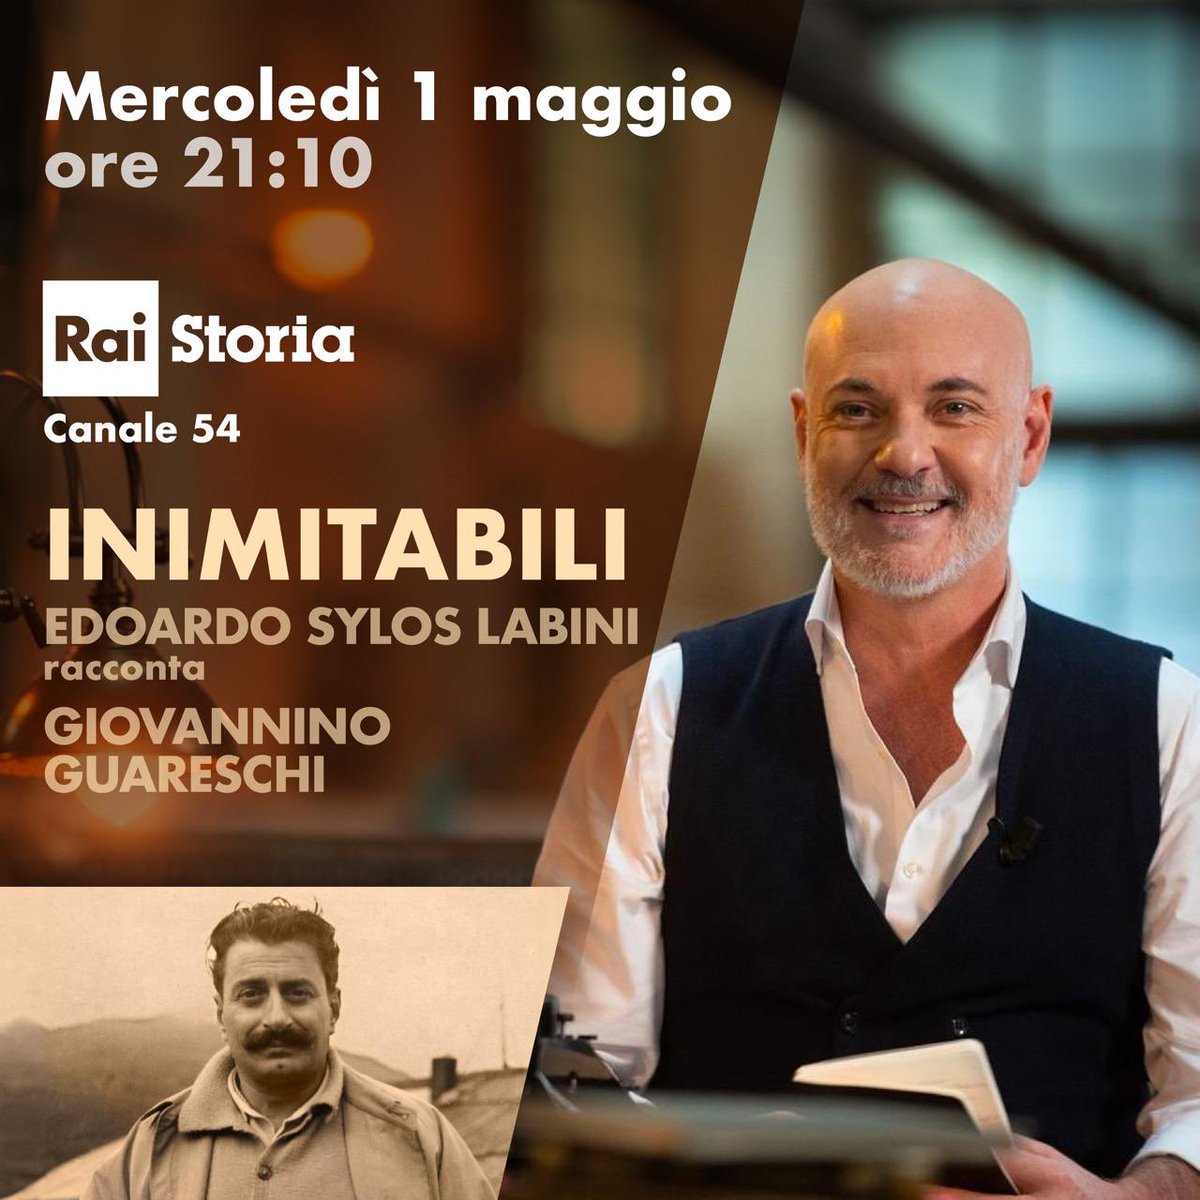 Tornano le repliche di #Inimitabili, da mercoledì 1 maggio alle 21:10 su @RaiStoria (canale 54) Si rincomincia con Giovannino Guareschi: mettete in agenda questo appuntamento. @RaiCultura @CulturaIdentita